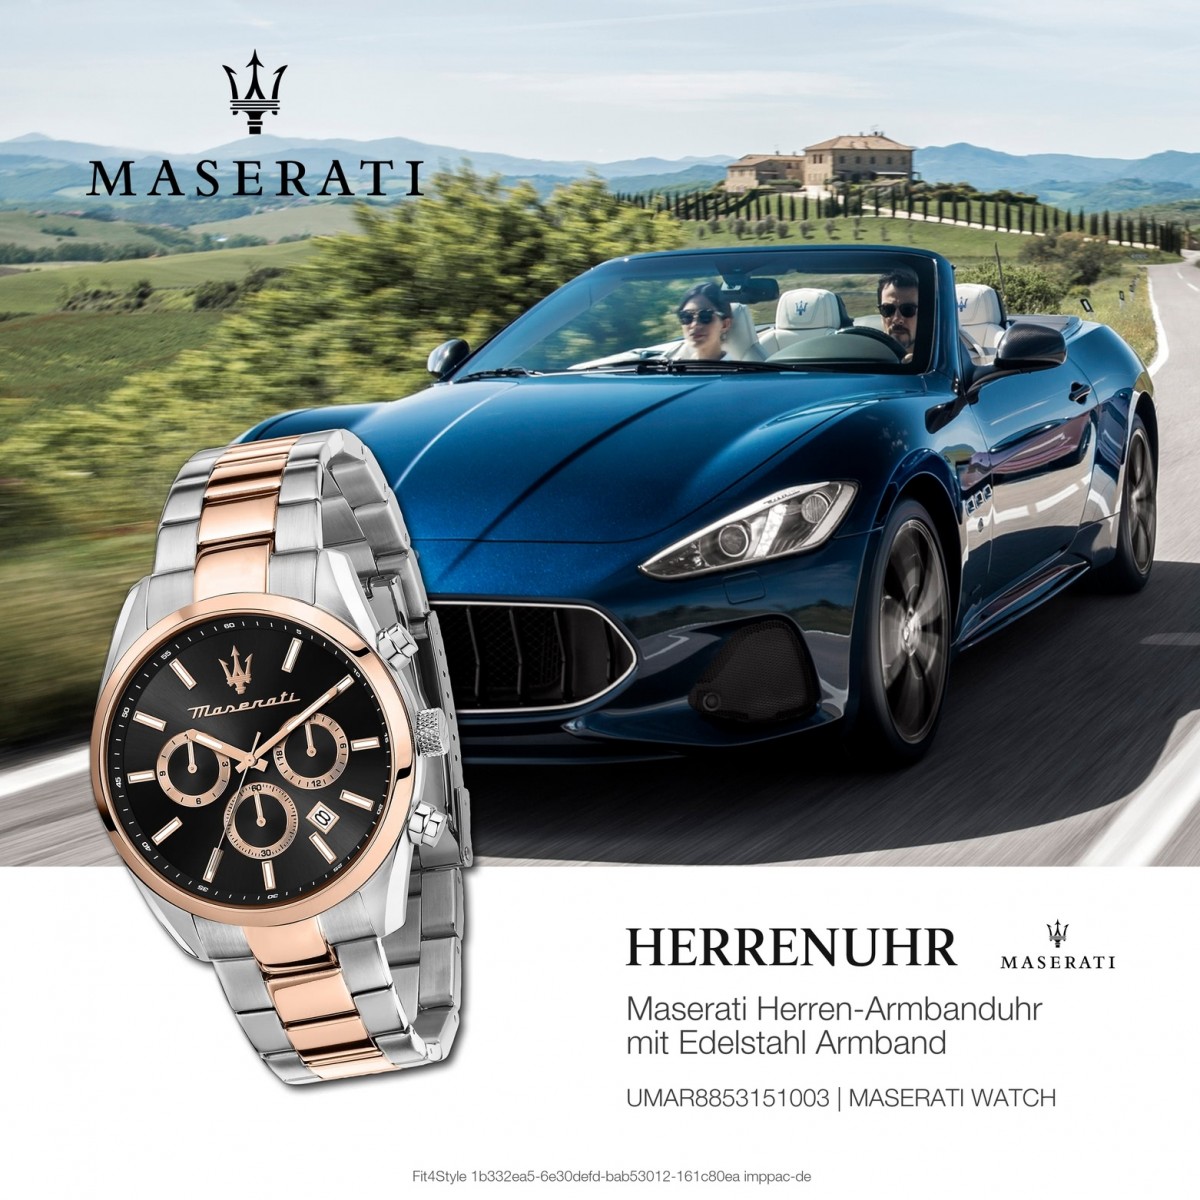 Maserati Herrenuhr Attrazione rosegold UMAR8853151003 Multi Edelstahl